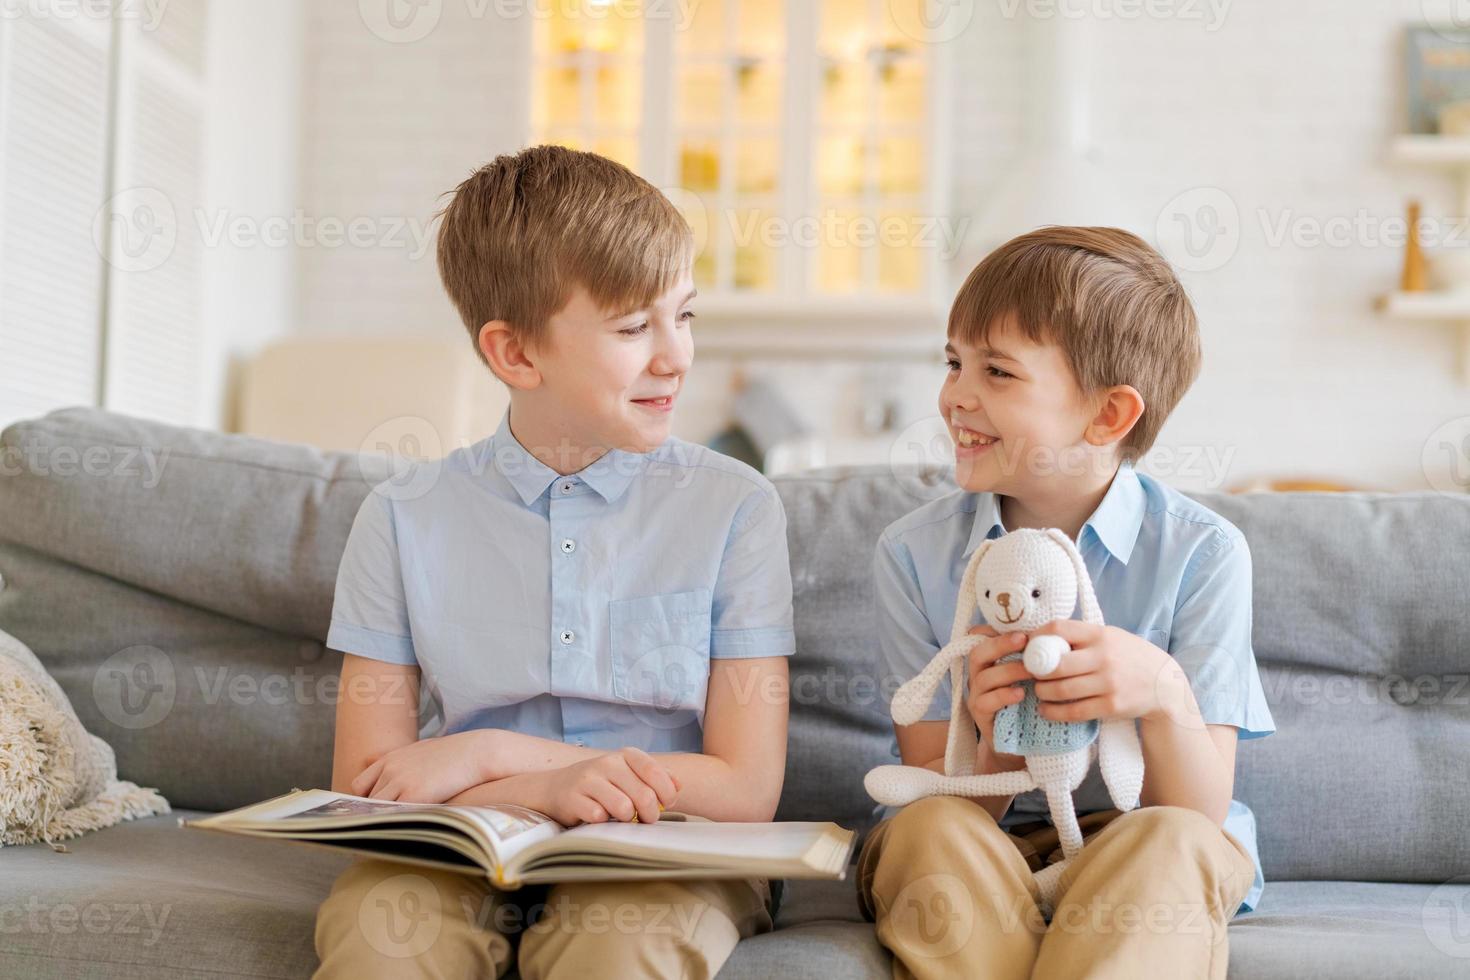 un hermano mayor le está leyendo un libro a su hermano menor sentado en el sofá. foto